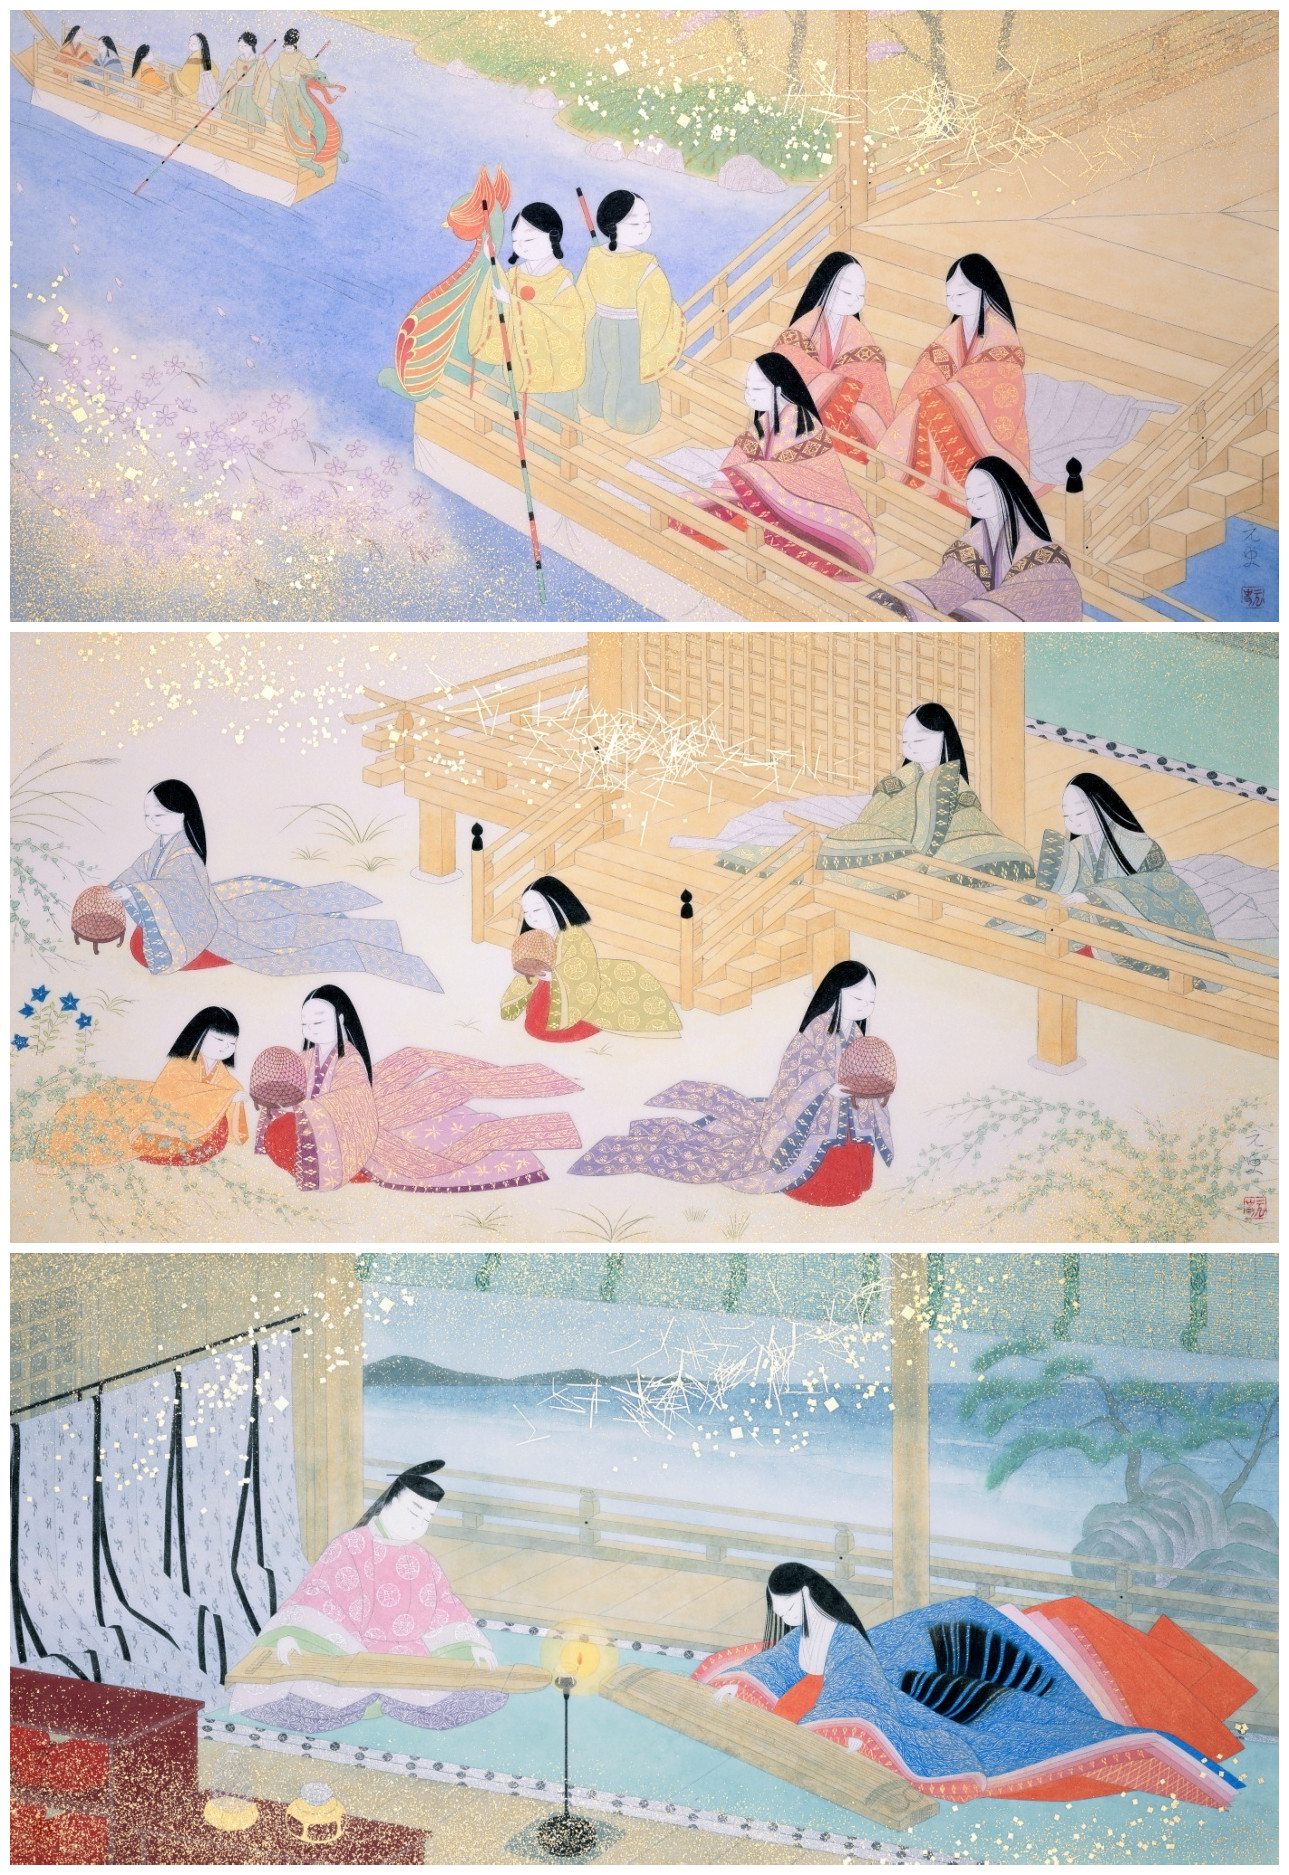 《源氏物语》：堪称日本的红楼梦，千年以前两性关系的直白书写